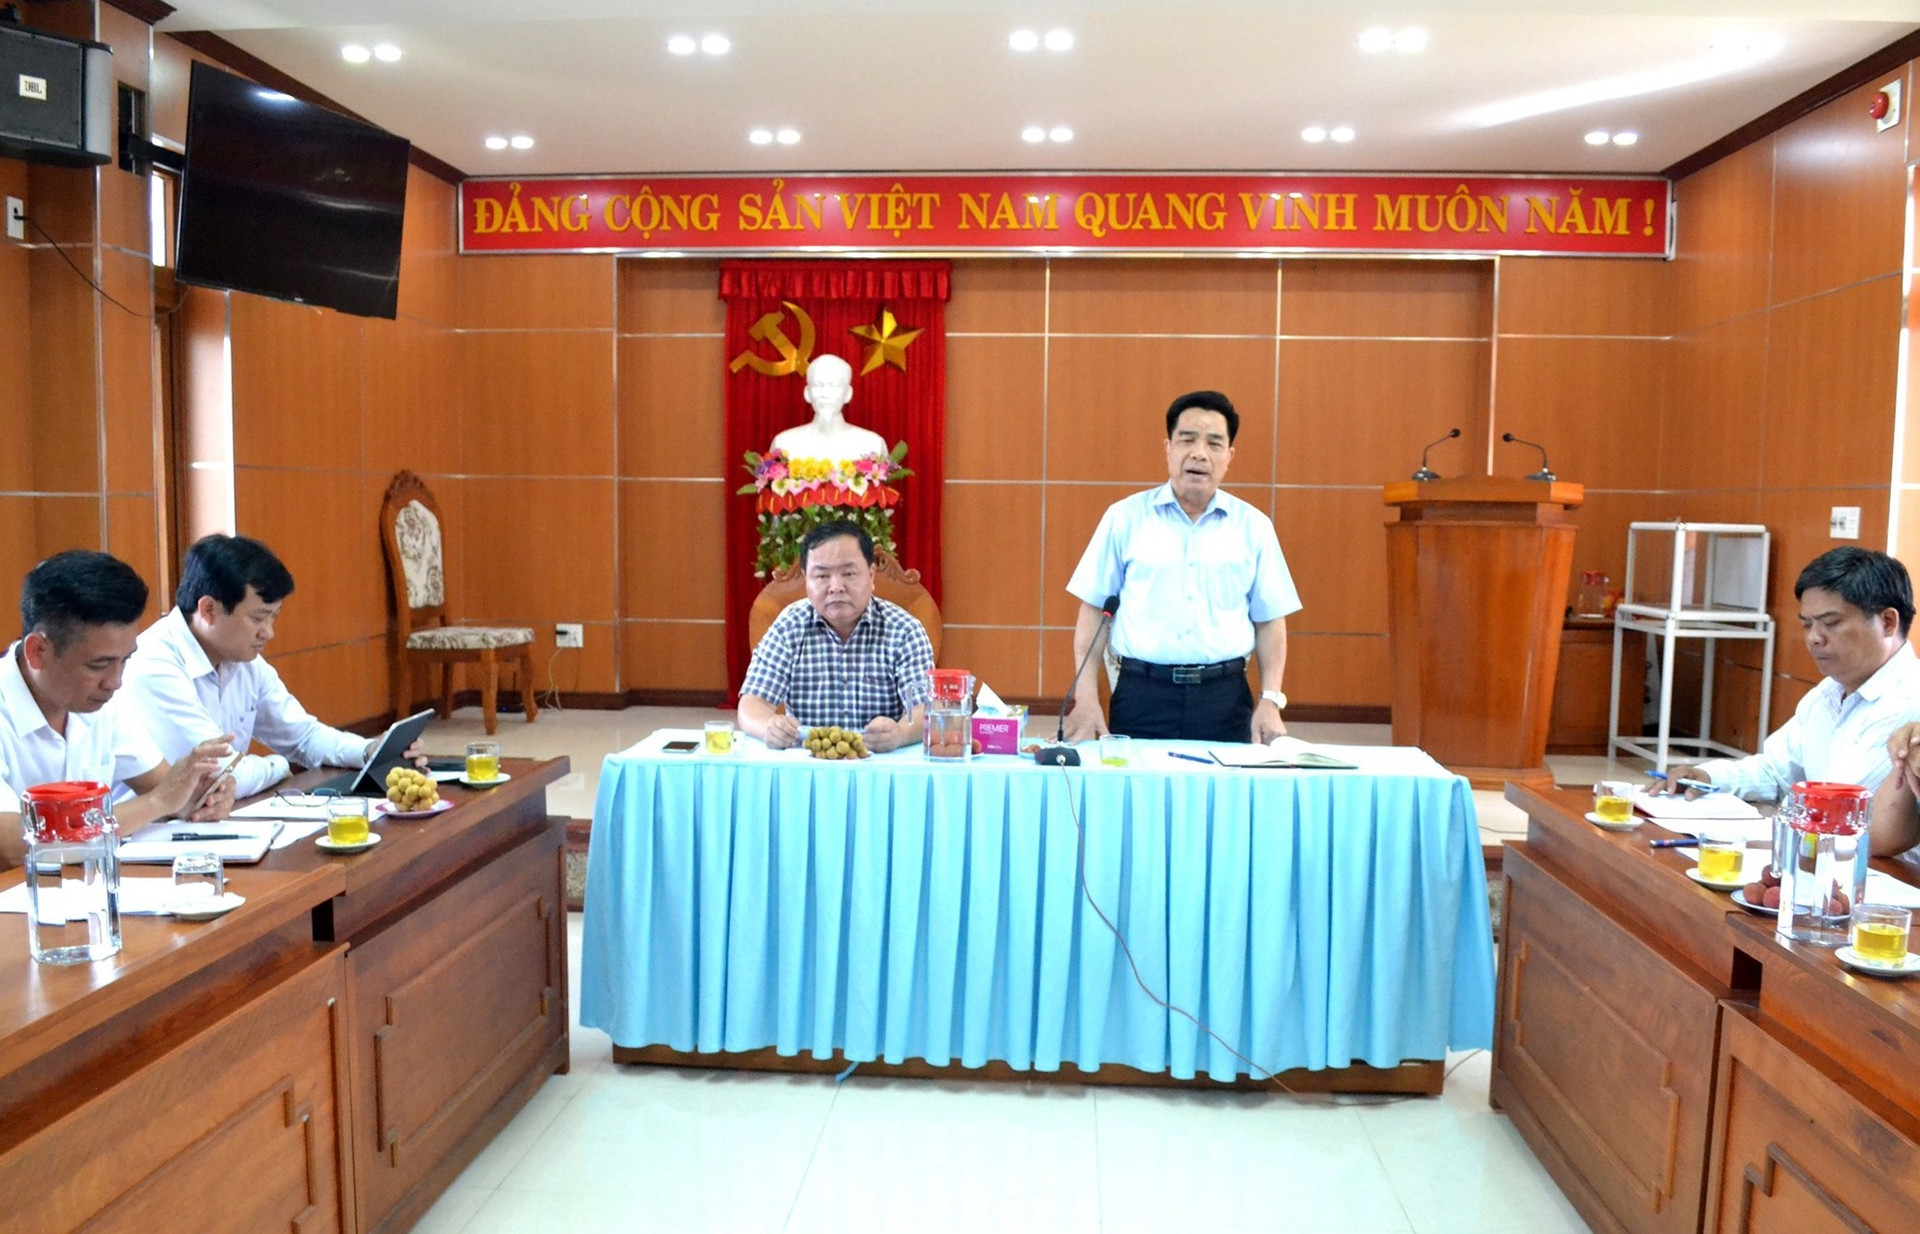 Đồng chí Lê Văn Dũng phát biểu chỉ đạo tại buổi làm việc với UBND huyện Phước Sơn, Ban quản lý dự án 4 - Cục đường bộ Việt Nam. Ảnh: Q.VIỆT